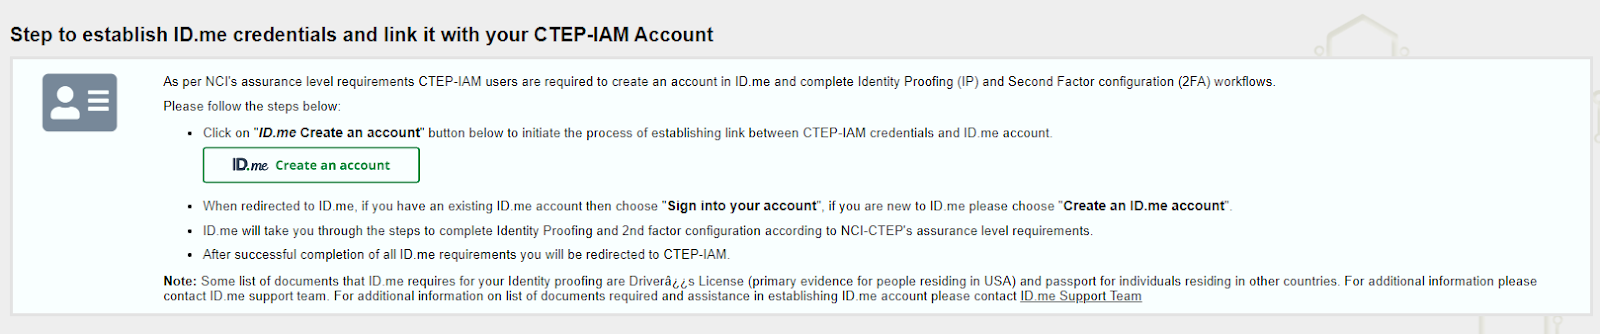 Establish ID.me credentials.png